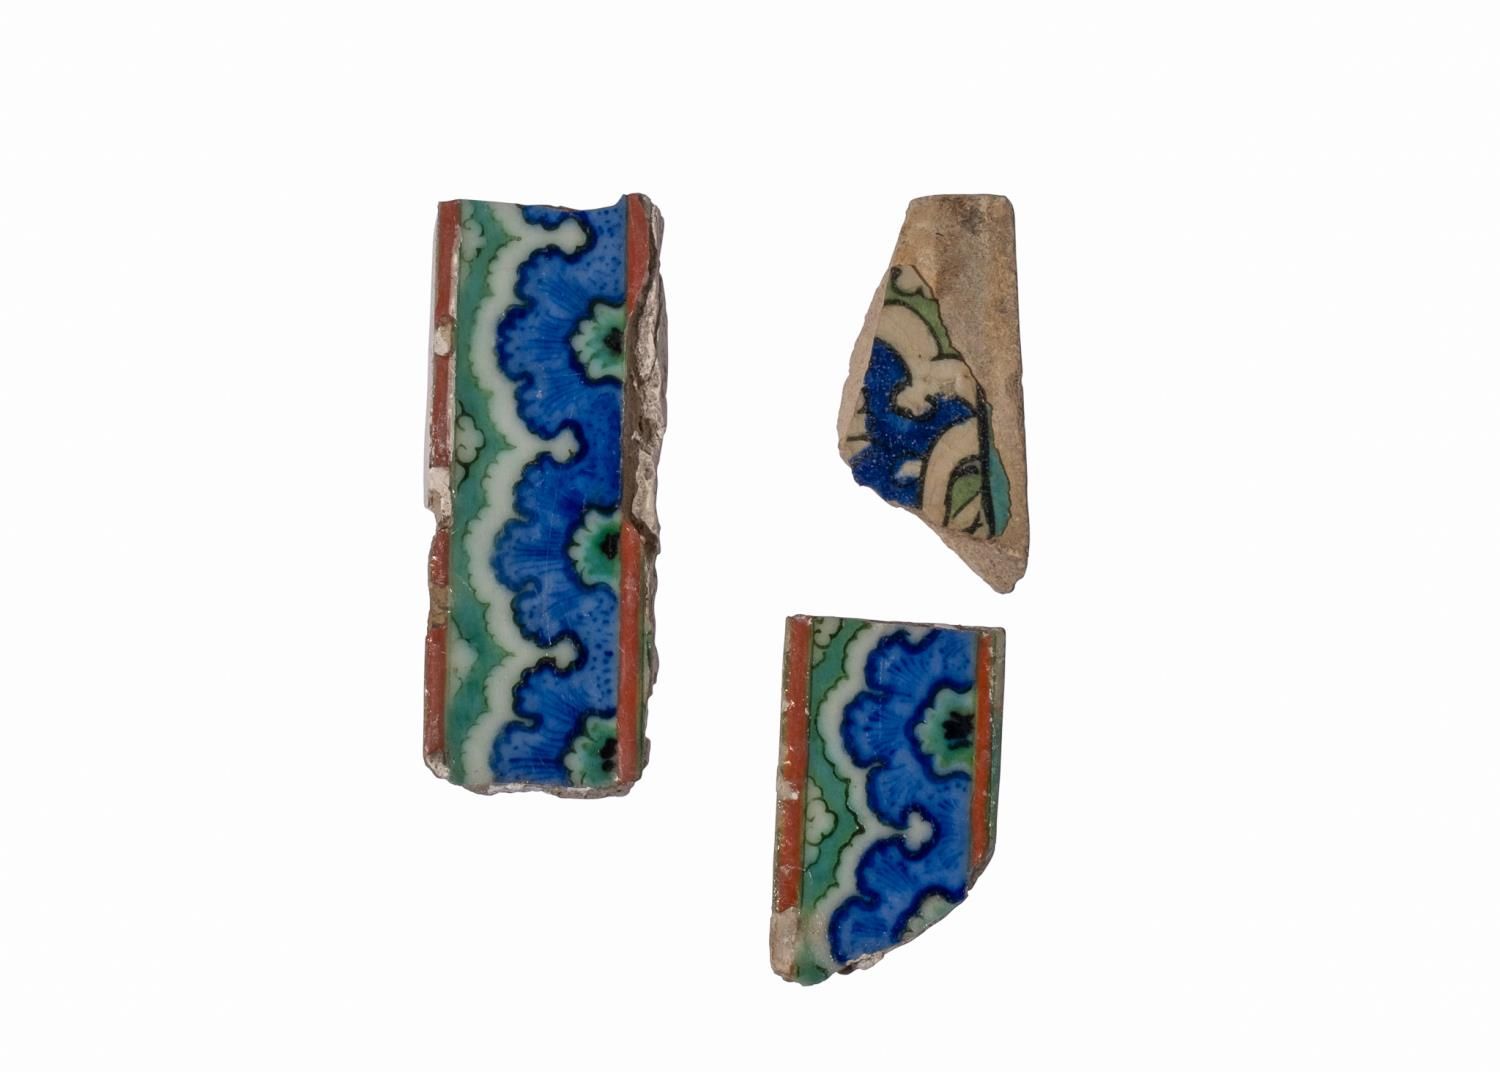 Null 三件早期伊兹尼克瓷砖碎片，约1520年，16世纪
 
 最大的长度：12.5厘米